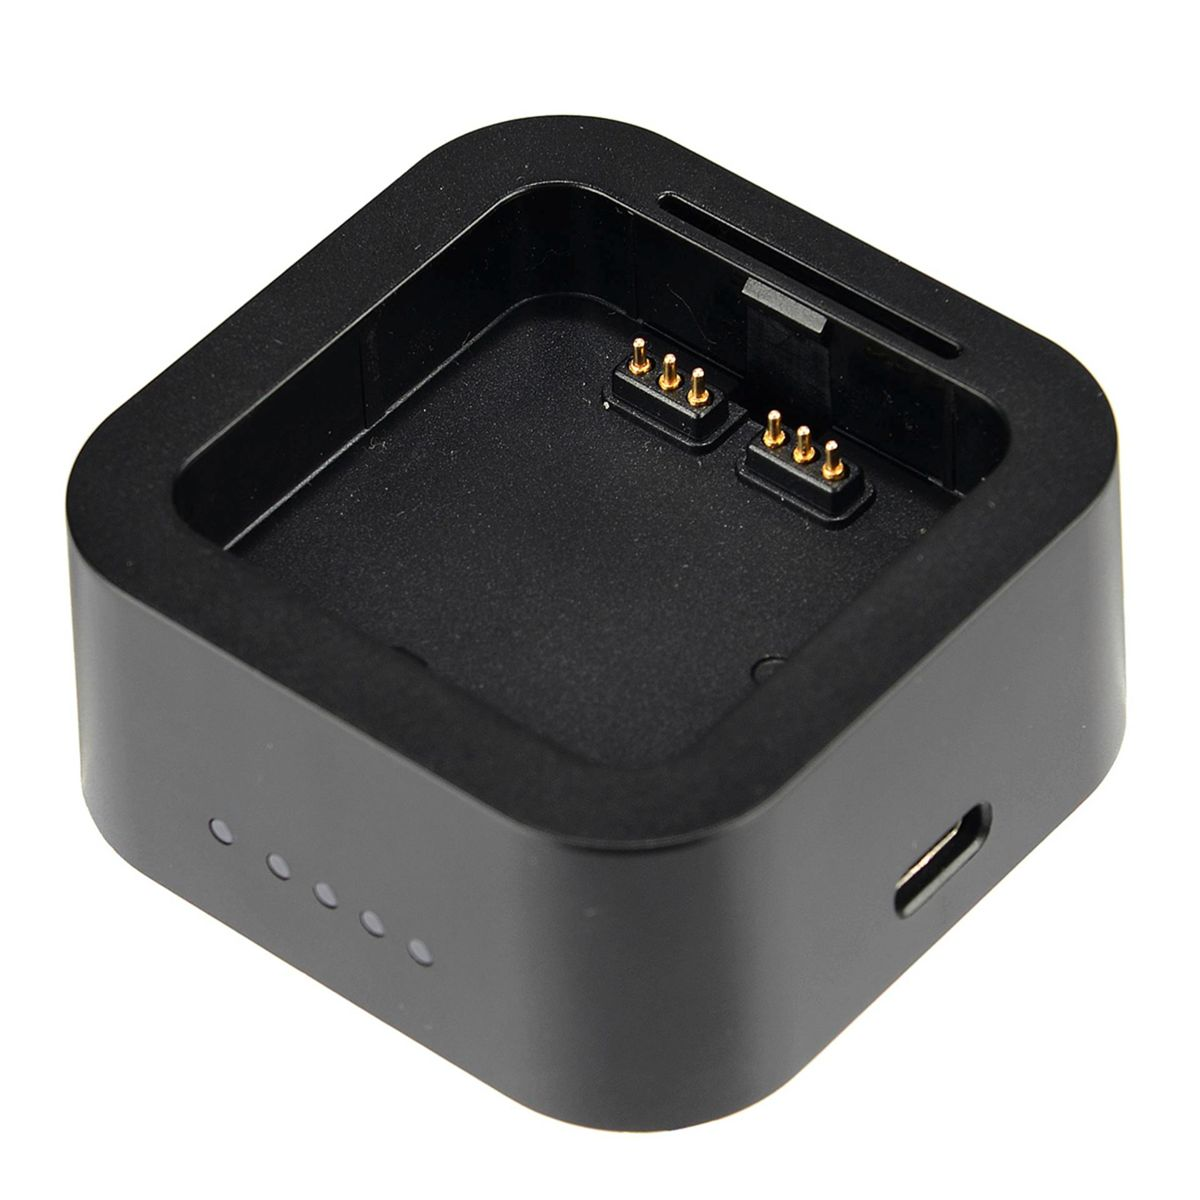 UC29 Universal, Ladegerät GODOX USB AD200 für Ladestecker Pro schwarz